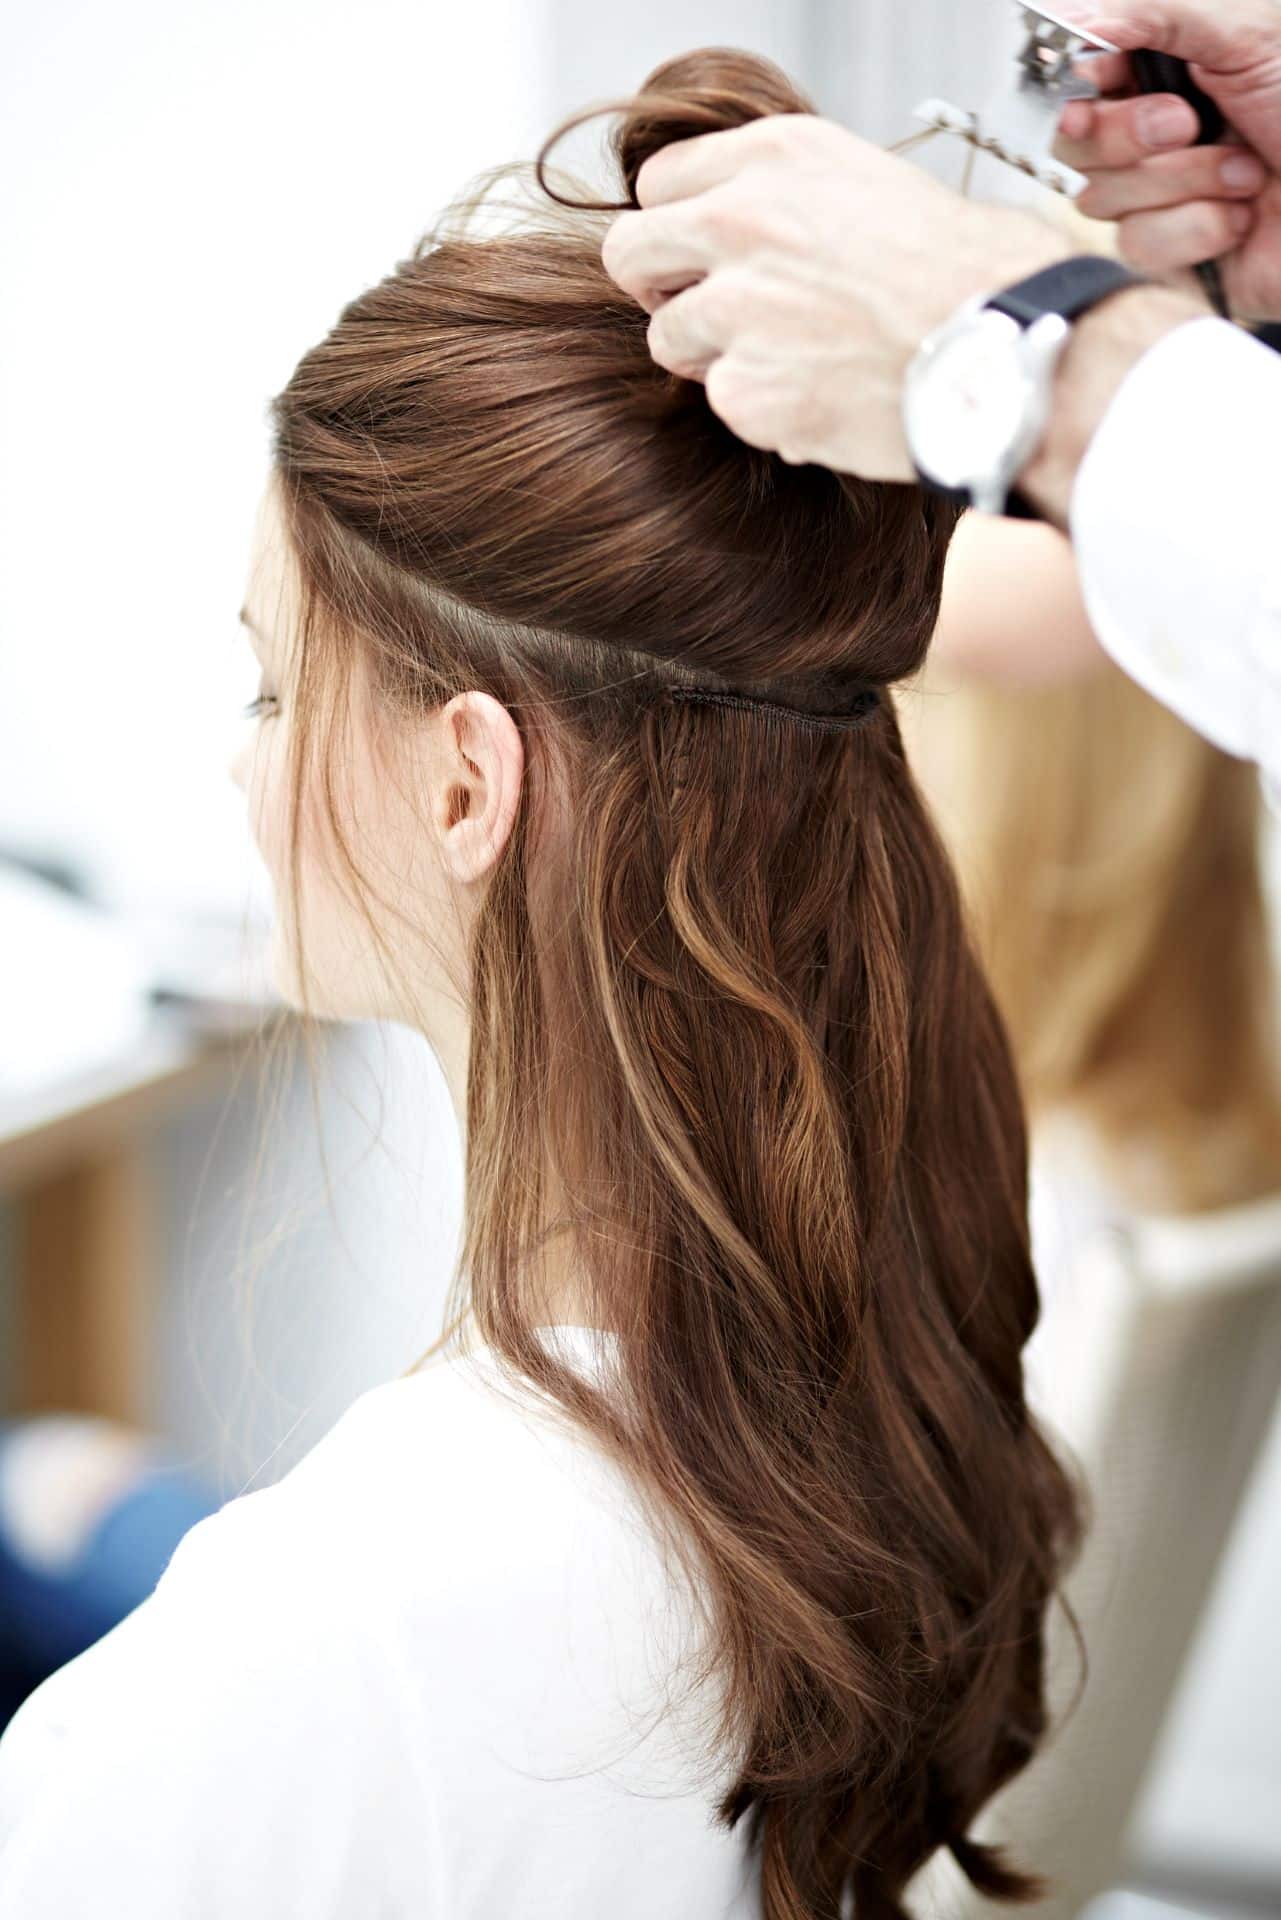 Le coiffeur soulève les cheveux supérieurs d'une cliente, ce qui permet de voir les tresses de cheveux naturels Hairdreams incorporées.